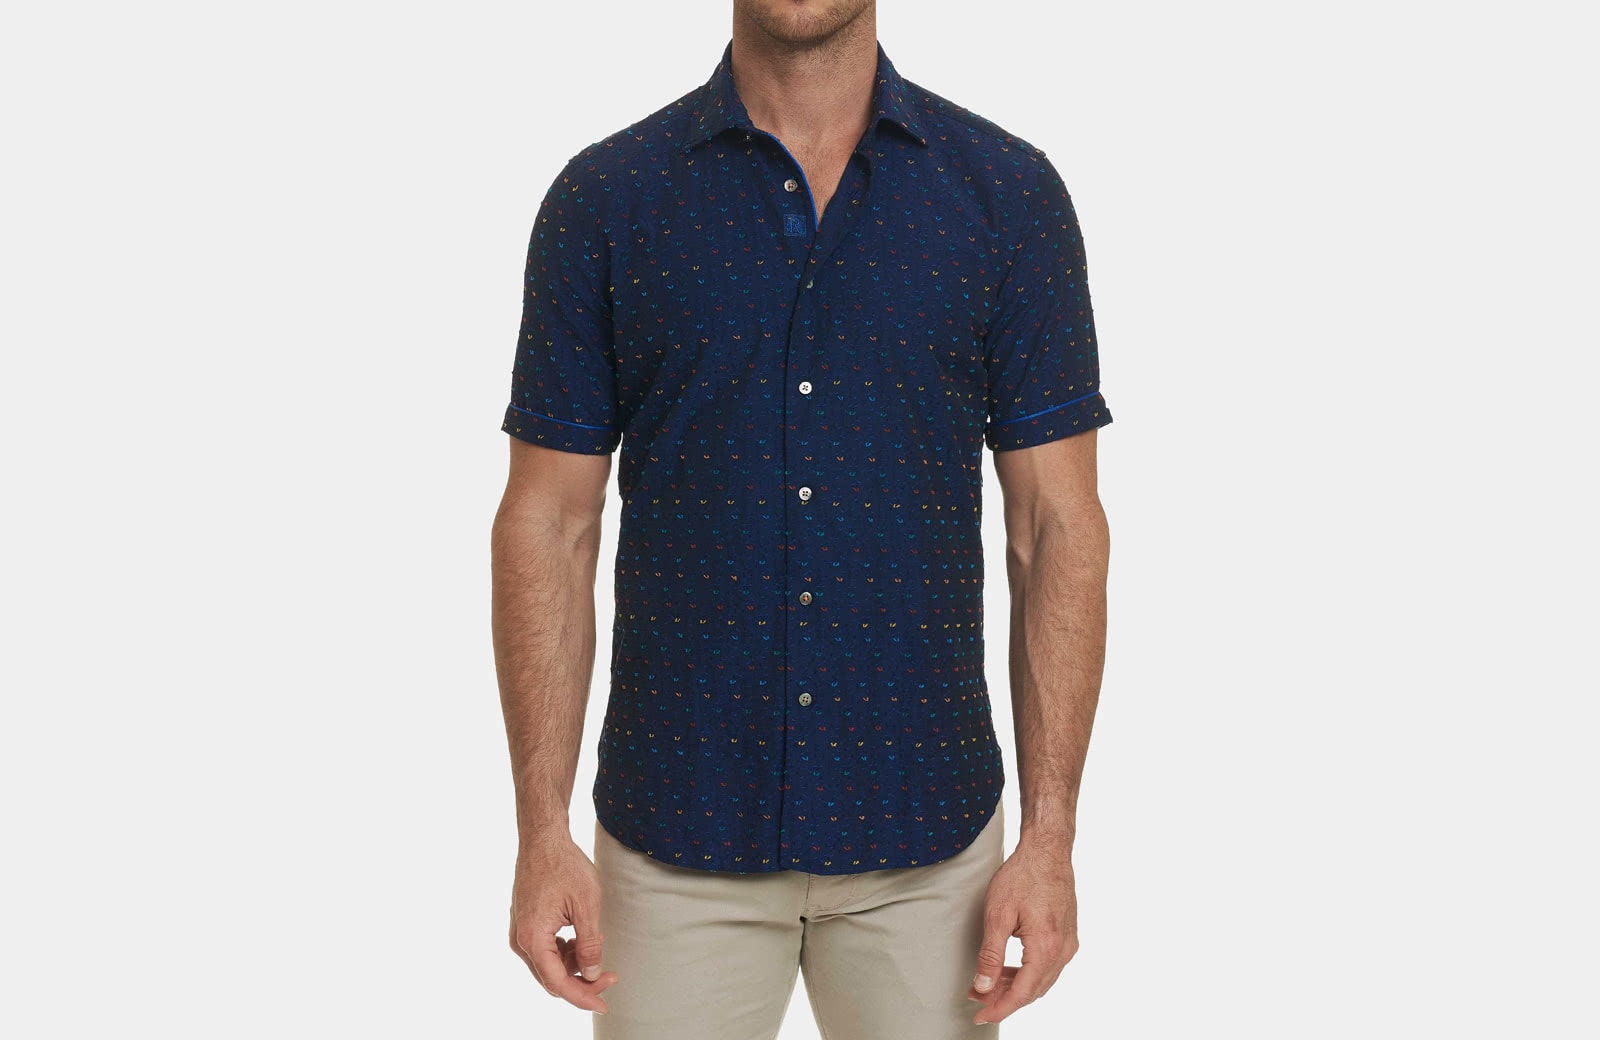 Robert Graham best men summer designer short sleeve shirt navy blue - Luxe Digital